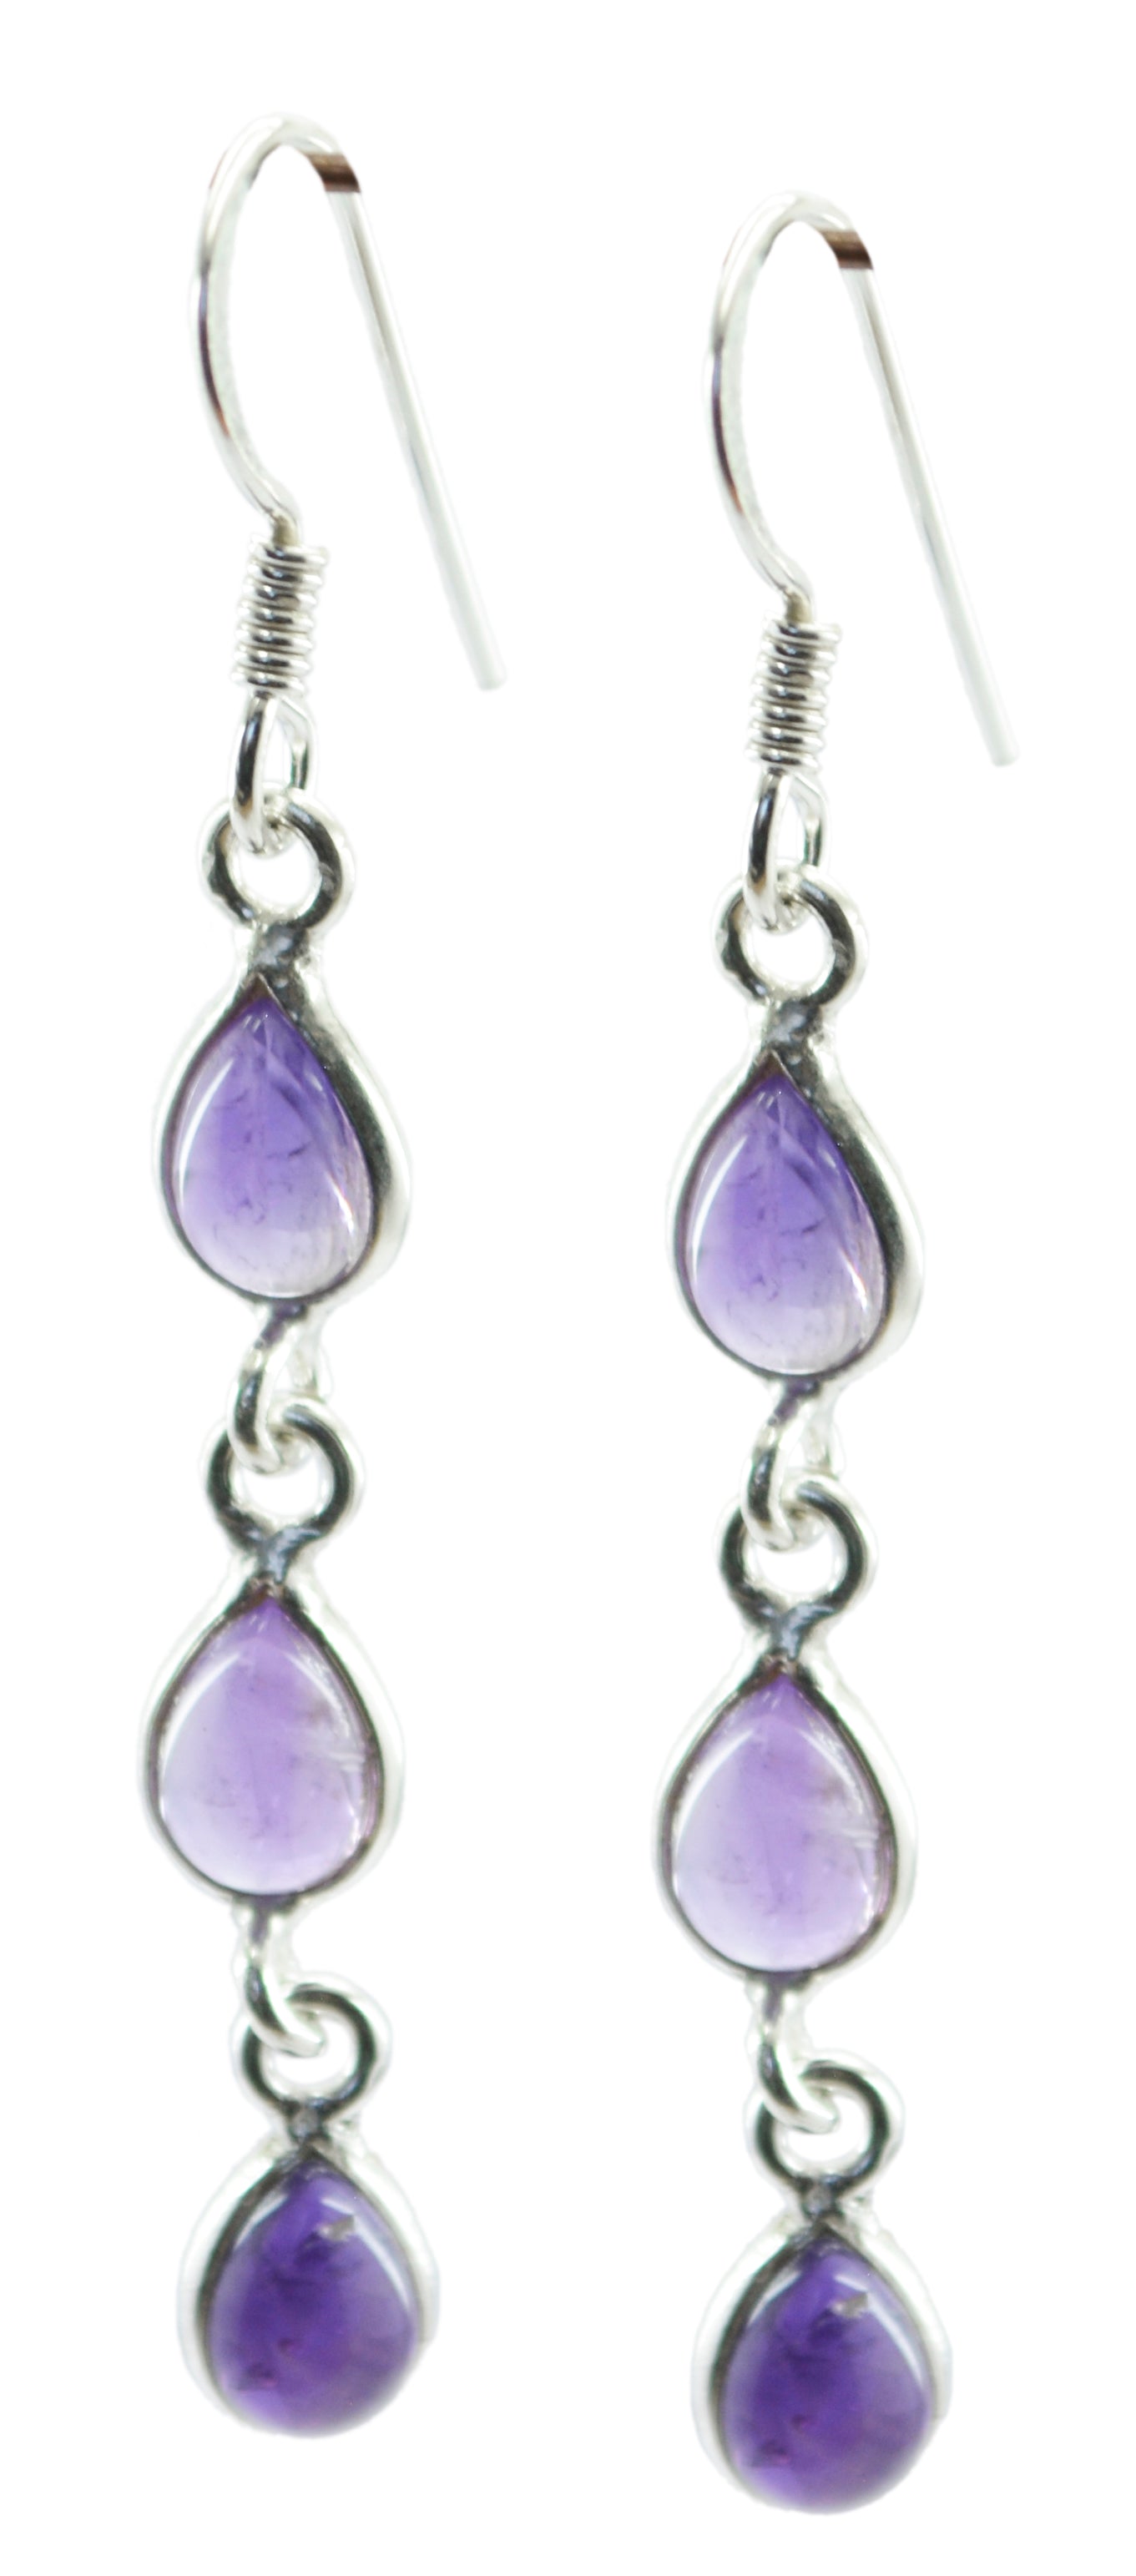 Riyo Good Gemstones pear Cabochon Purple Amethyst Silver Earring graduation gift